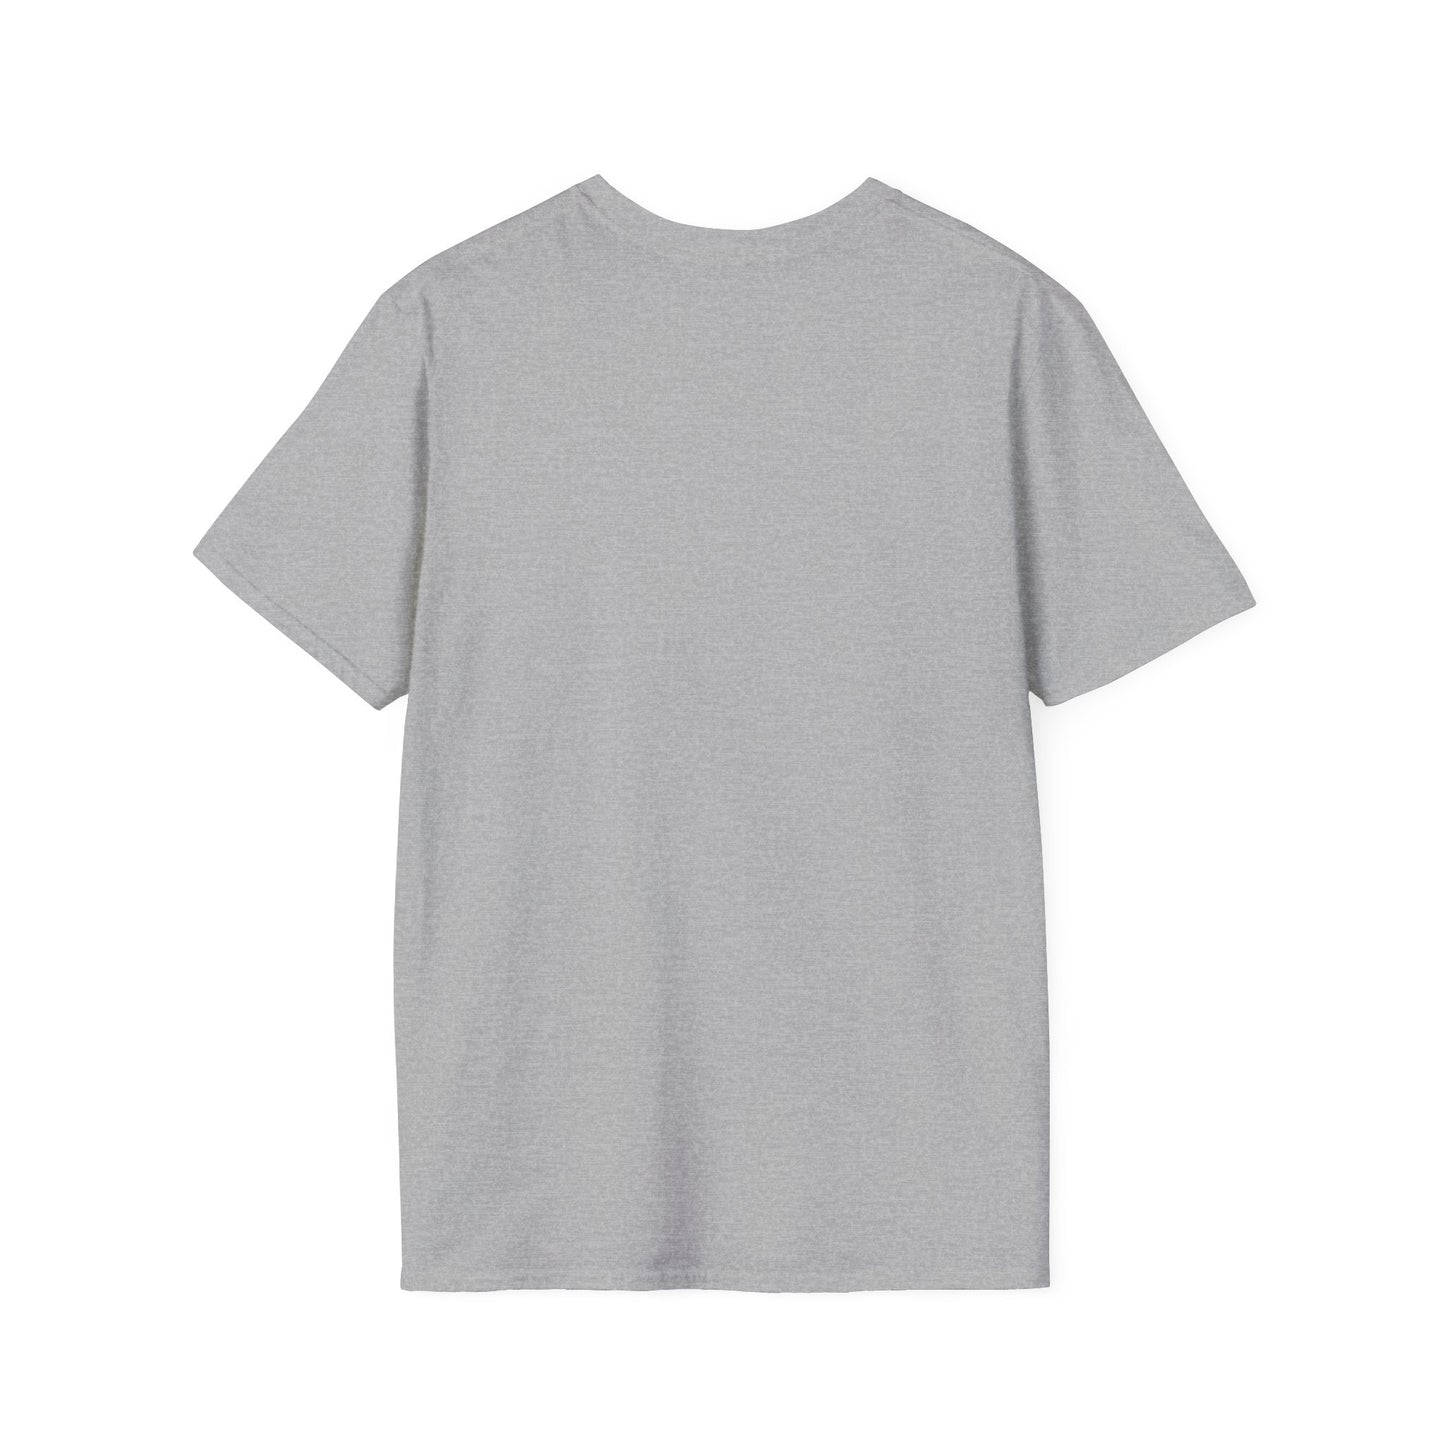 TG-10 Unisex Softstyle T-Shirt